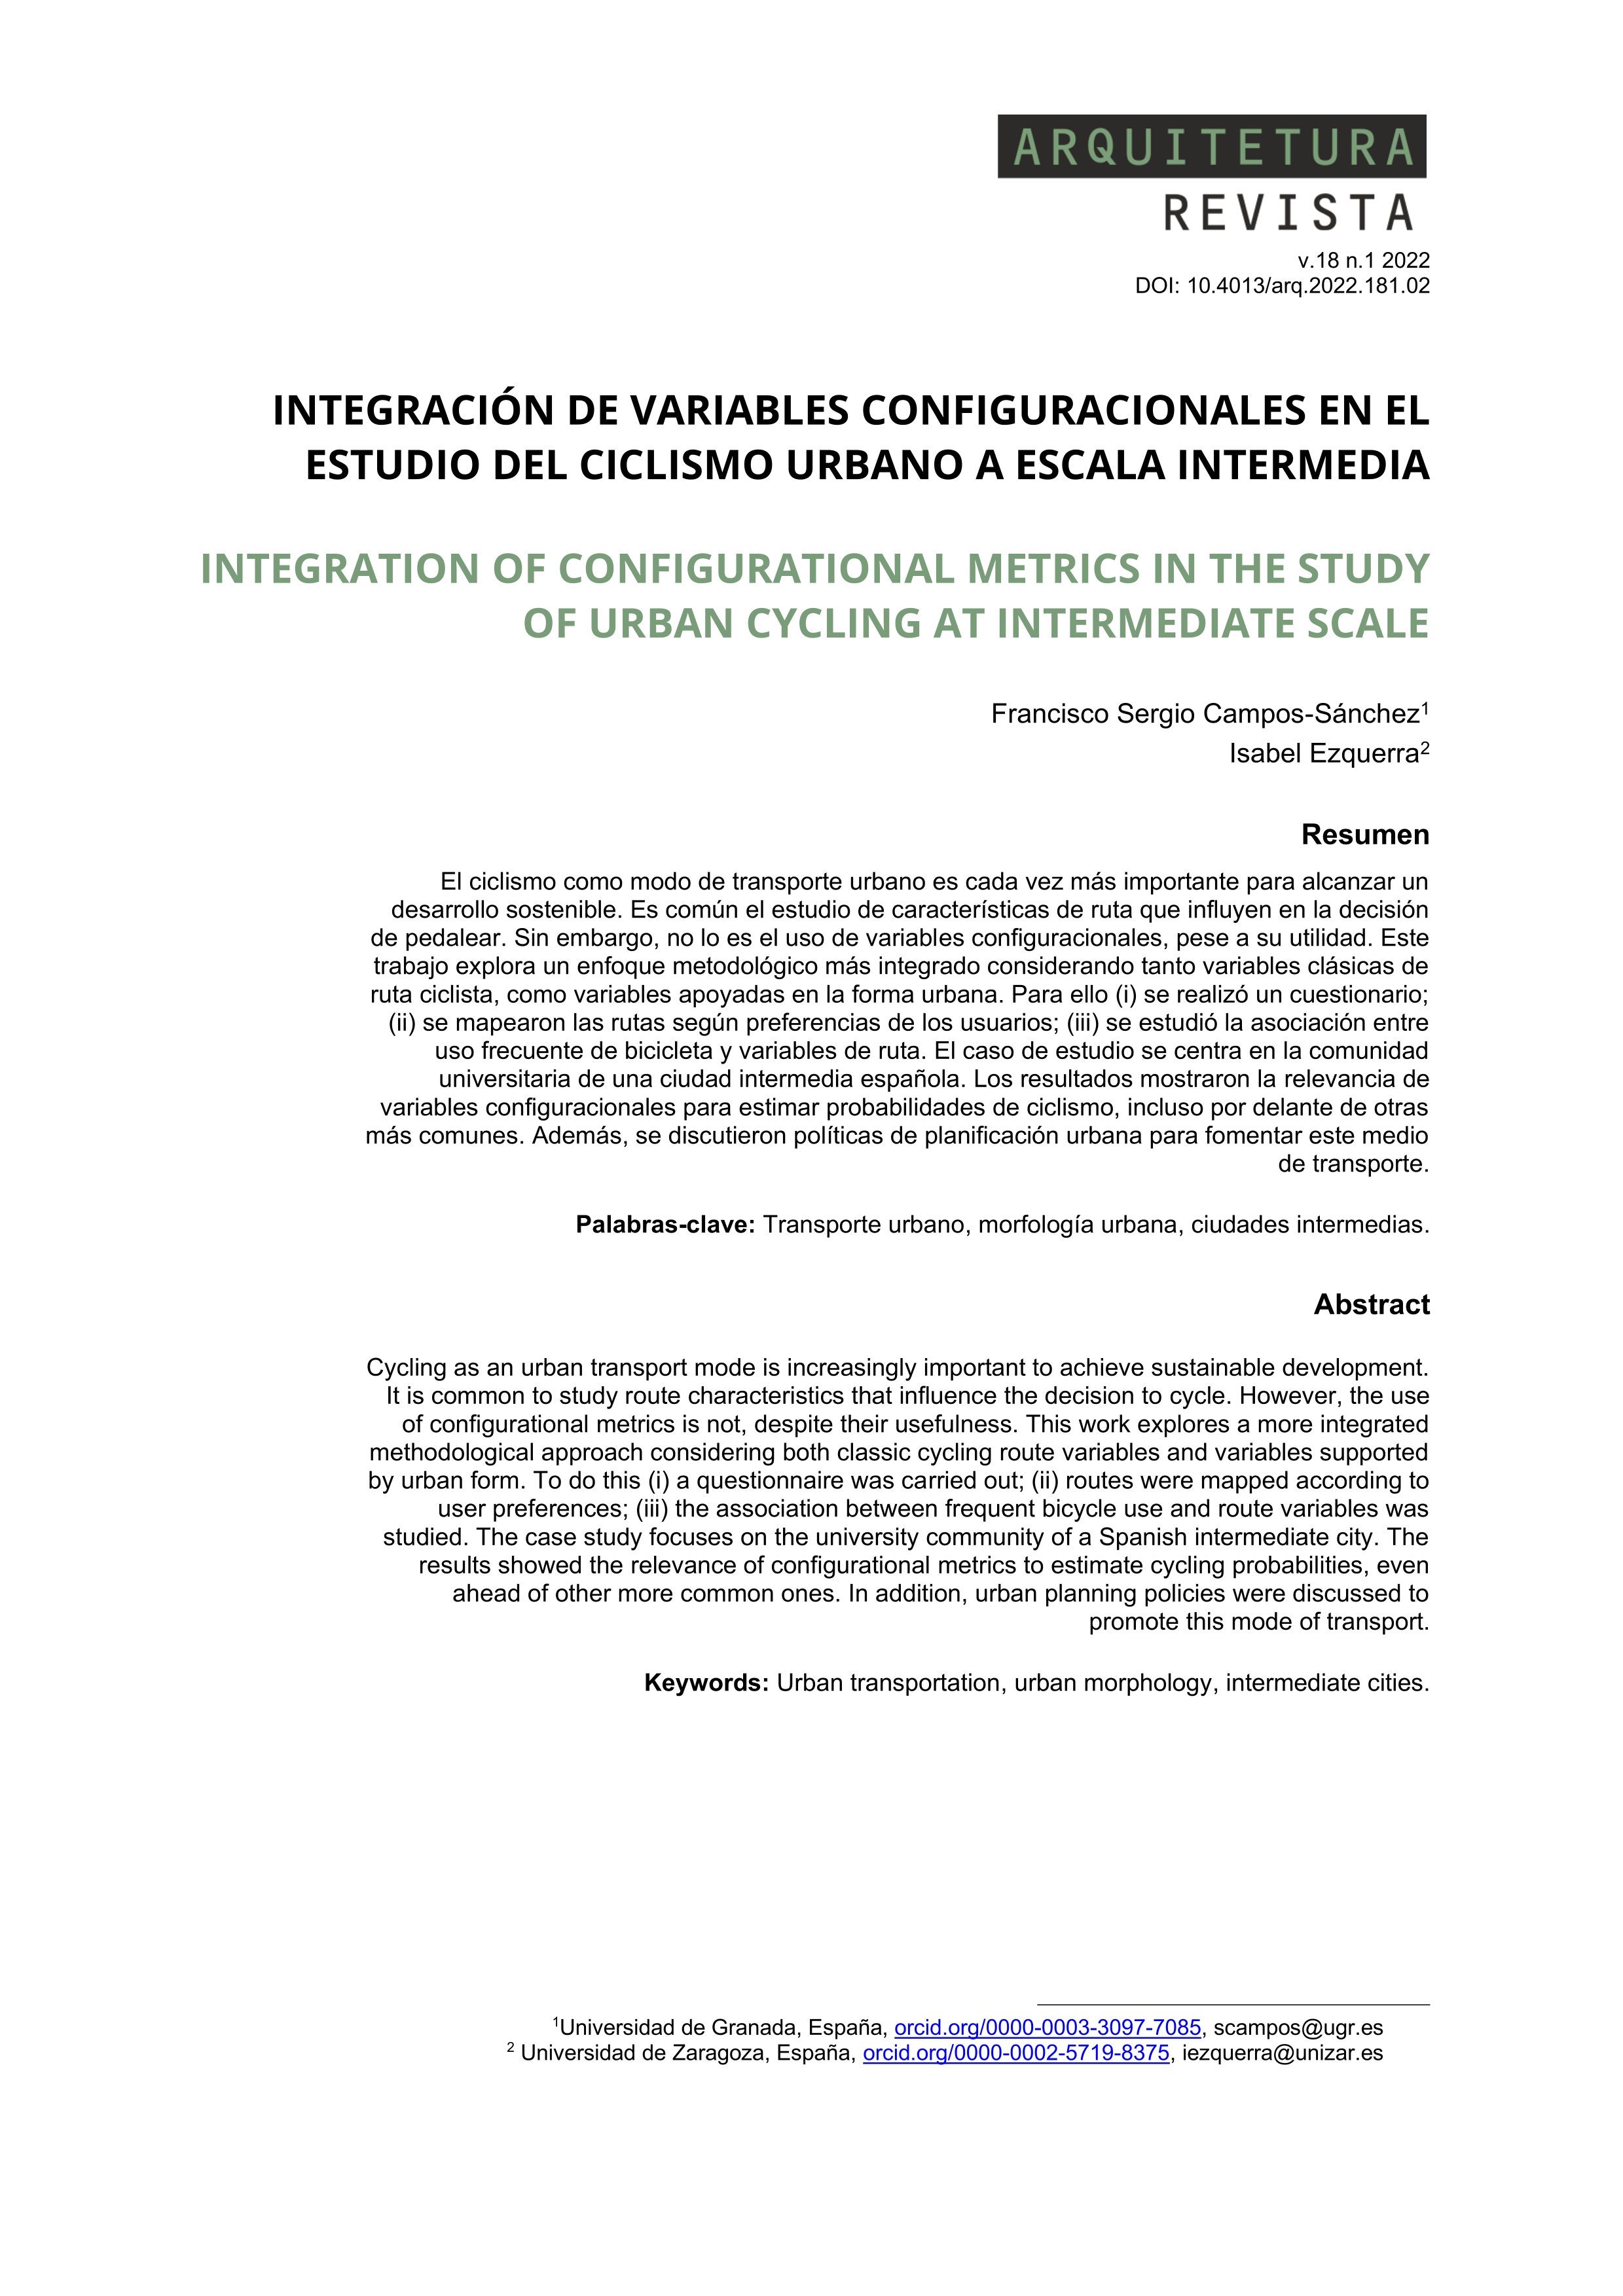 Integración de variables configuracionales en el estudio del ciclismo urbano a escala intermedia